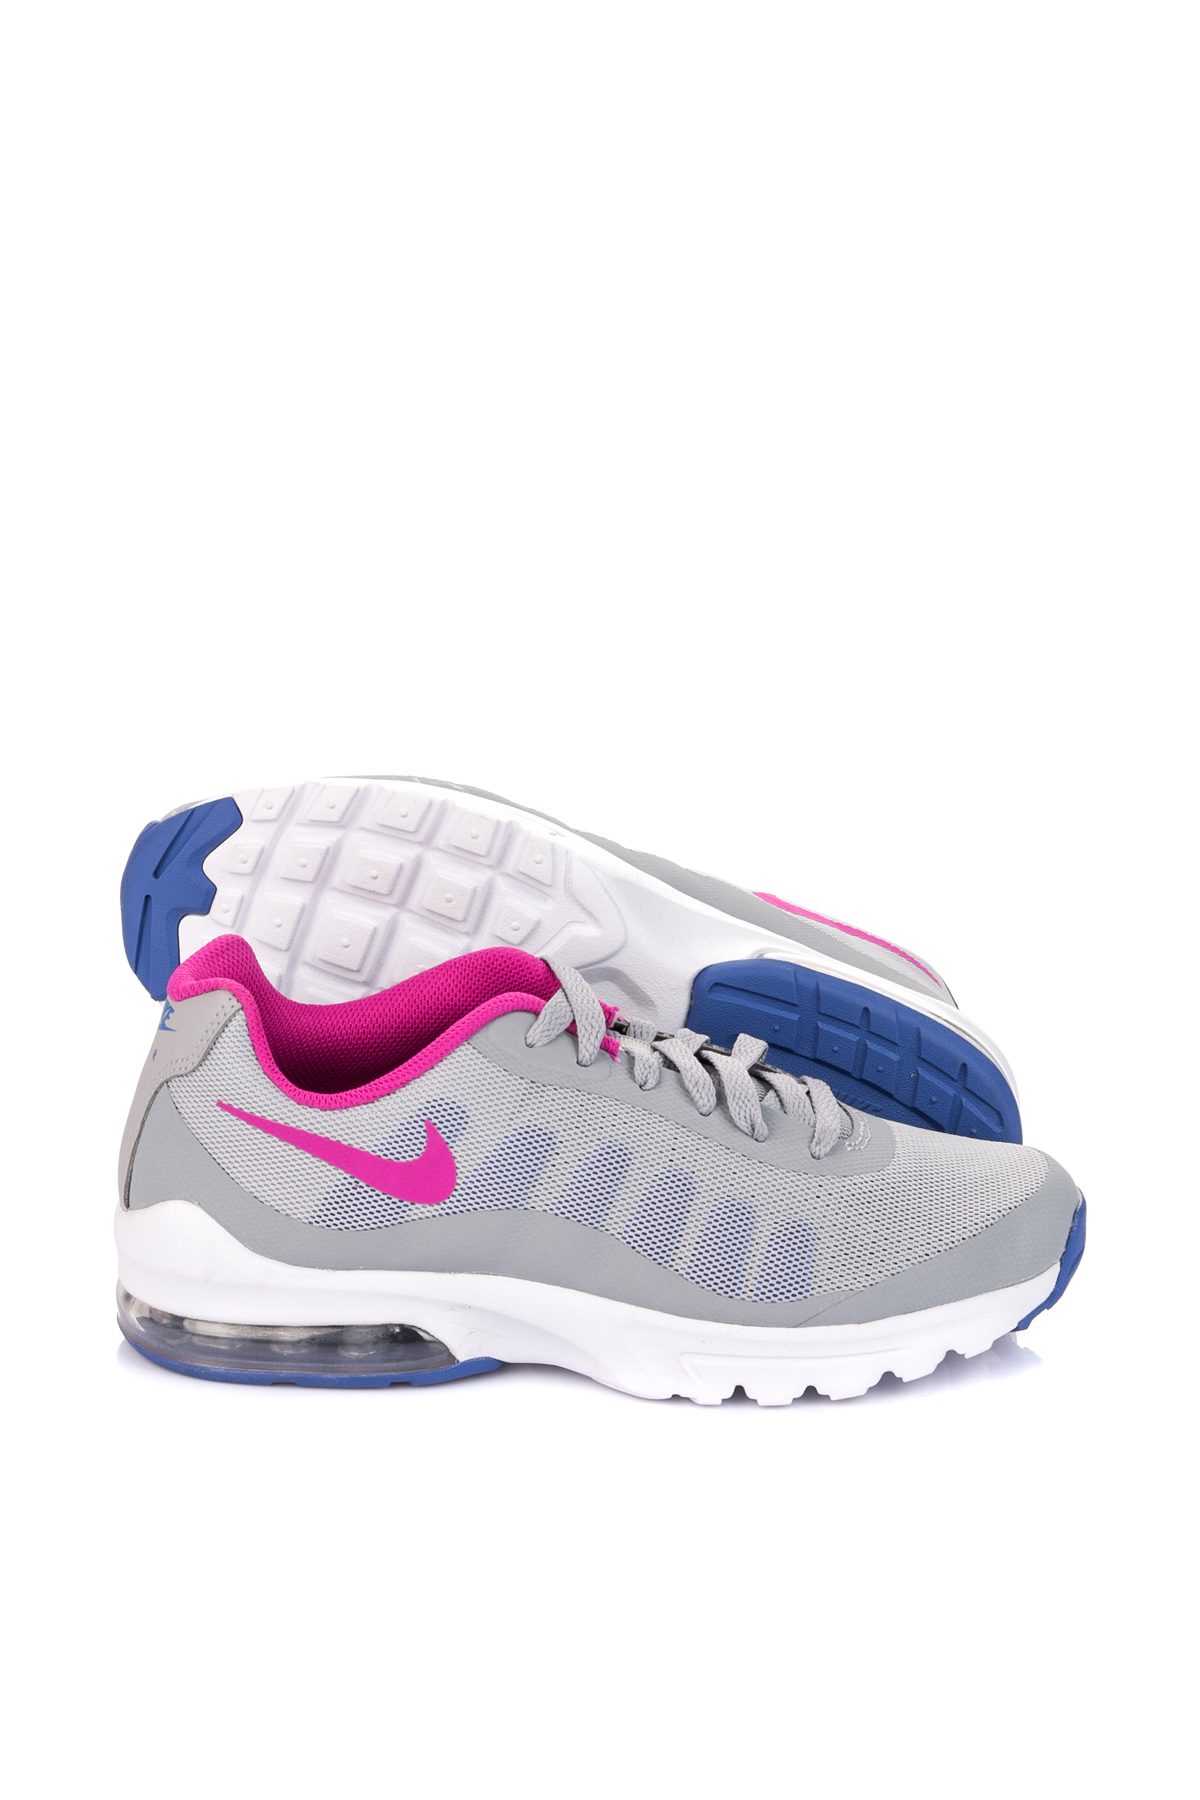 Nike Kadın Koşu Ayakkabı - Air Max Invigor - 749575-004